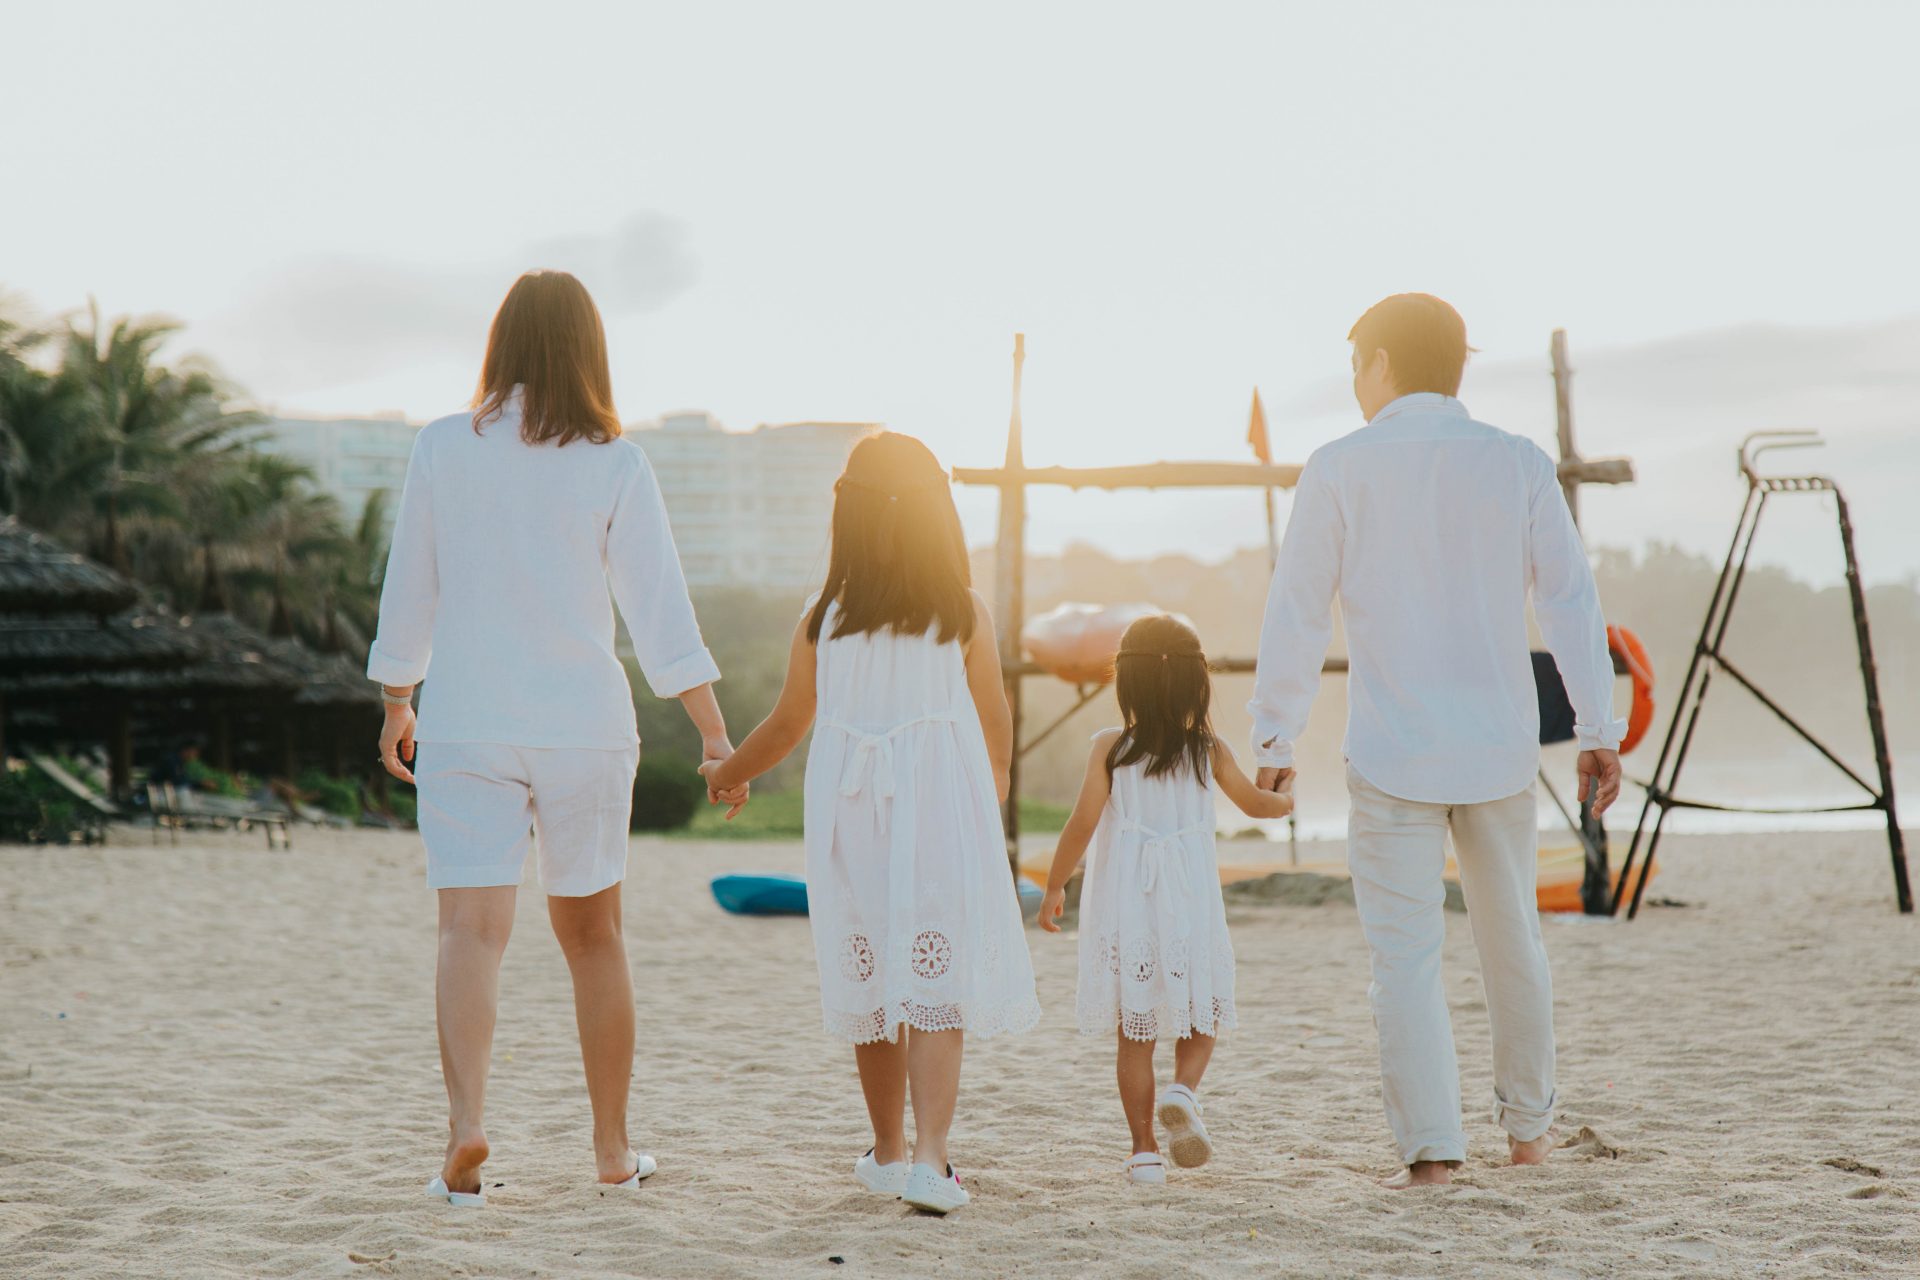 Với những tạo dáng đầy sáng tạo, chụp ảnh gia đình ở bãi biển đã trở nên thú vị hơn bao giờ hết. Hãy cùng xem những bức ảnh lưu giữ những khoảnh khắc đáng nhớ của gia đình trên cát trắng, biển xanh.